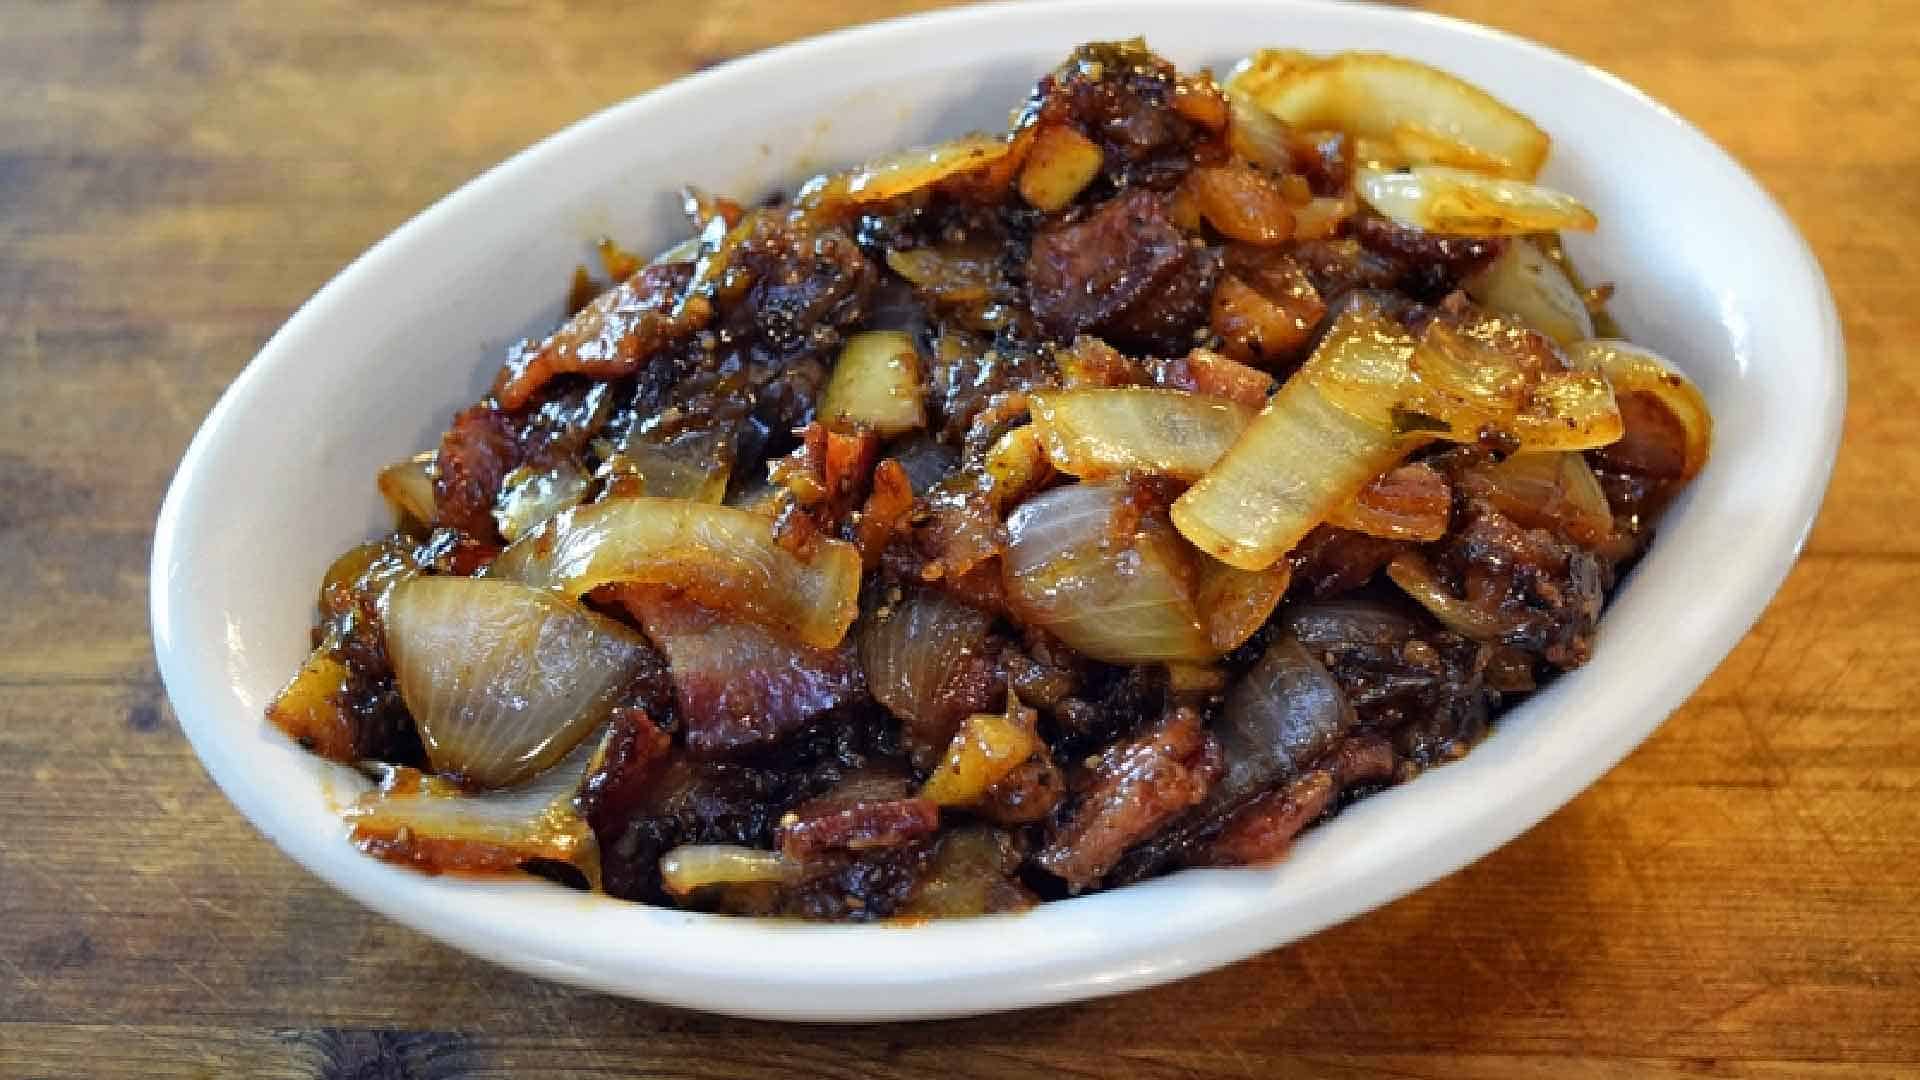 Bowl of jalapeno-bacon jam.